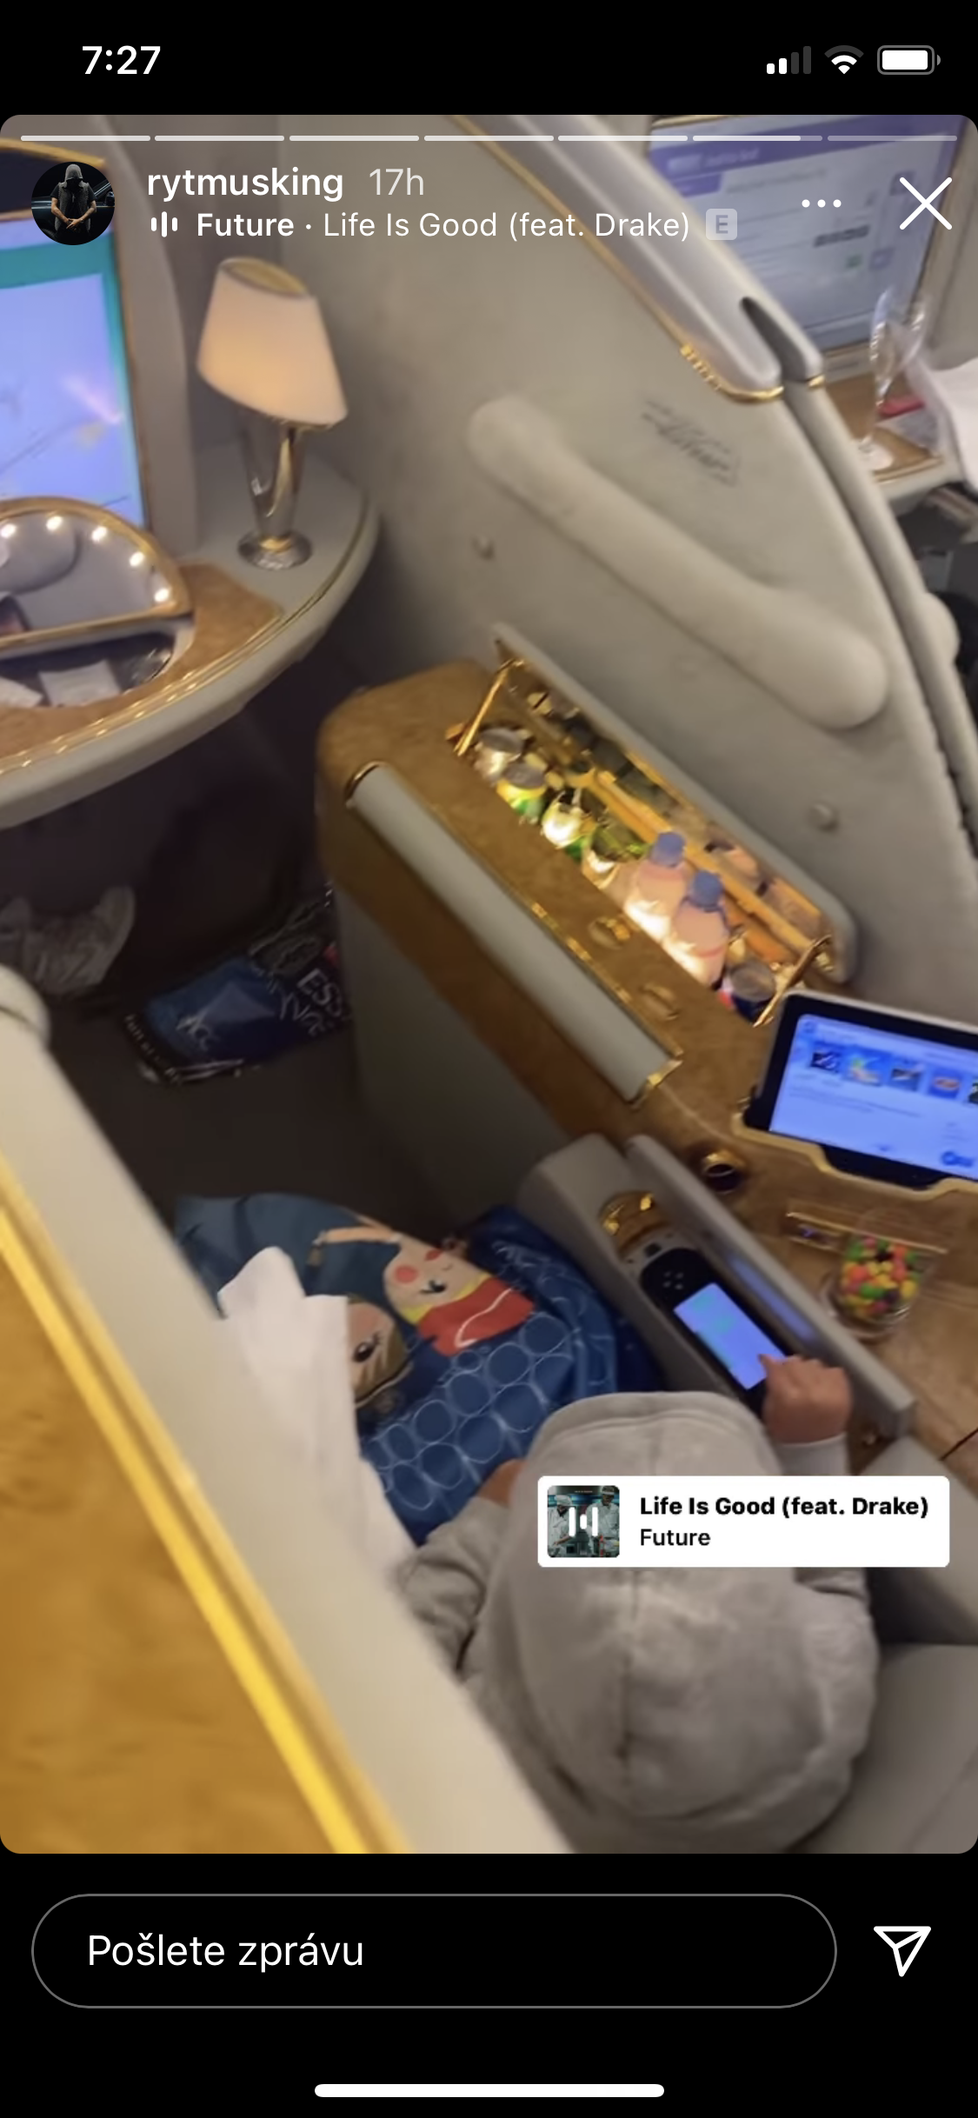 Luxusní kabina v letadle, kterou si užívali při návratu z Dubaje Jasmina Alagič s Rytmusem a synem Sanelem.